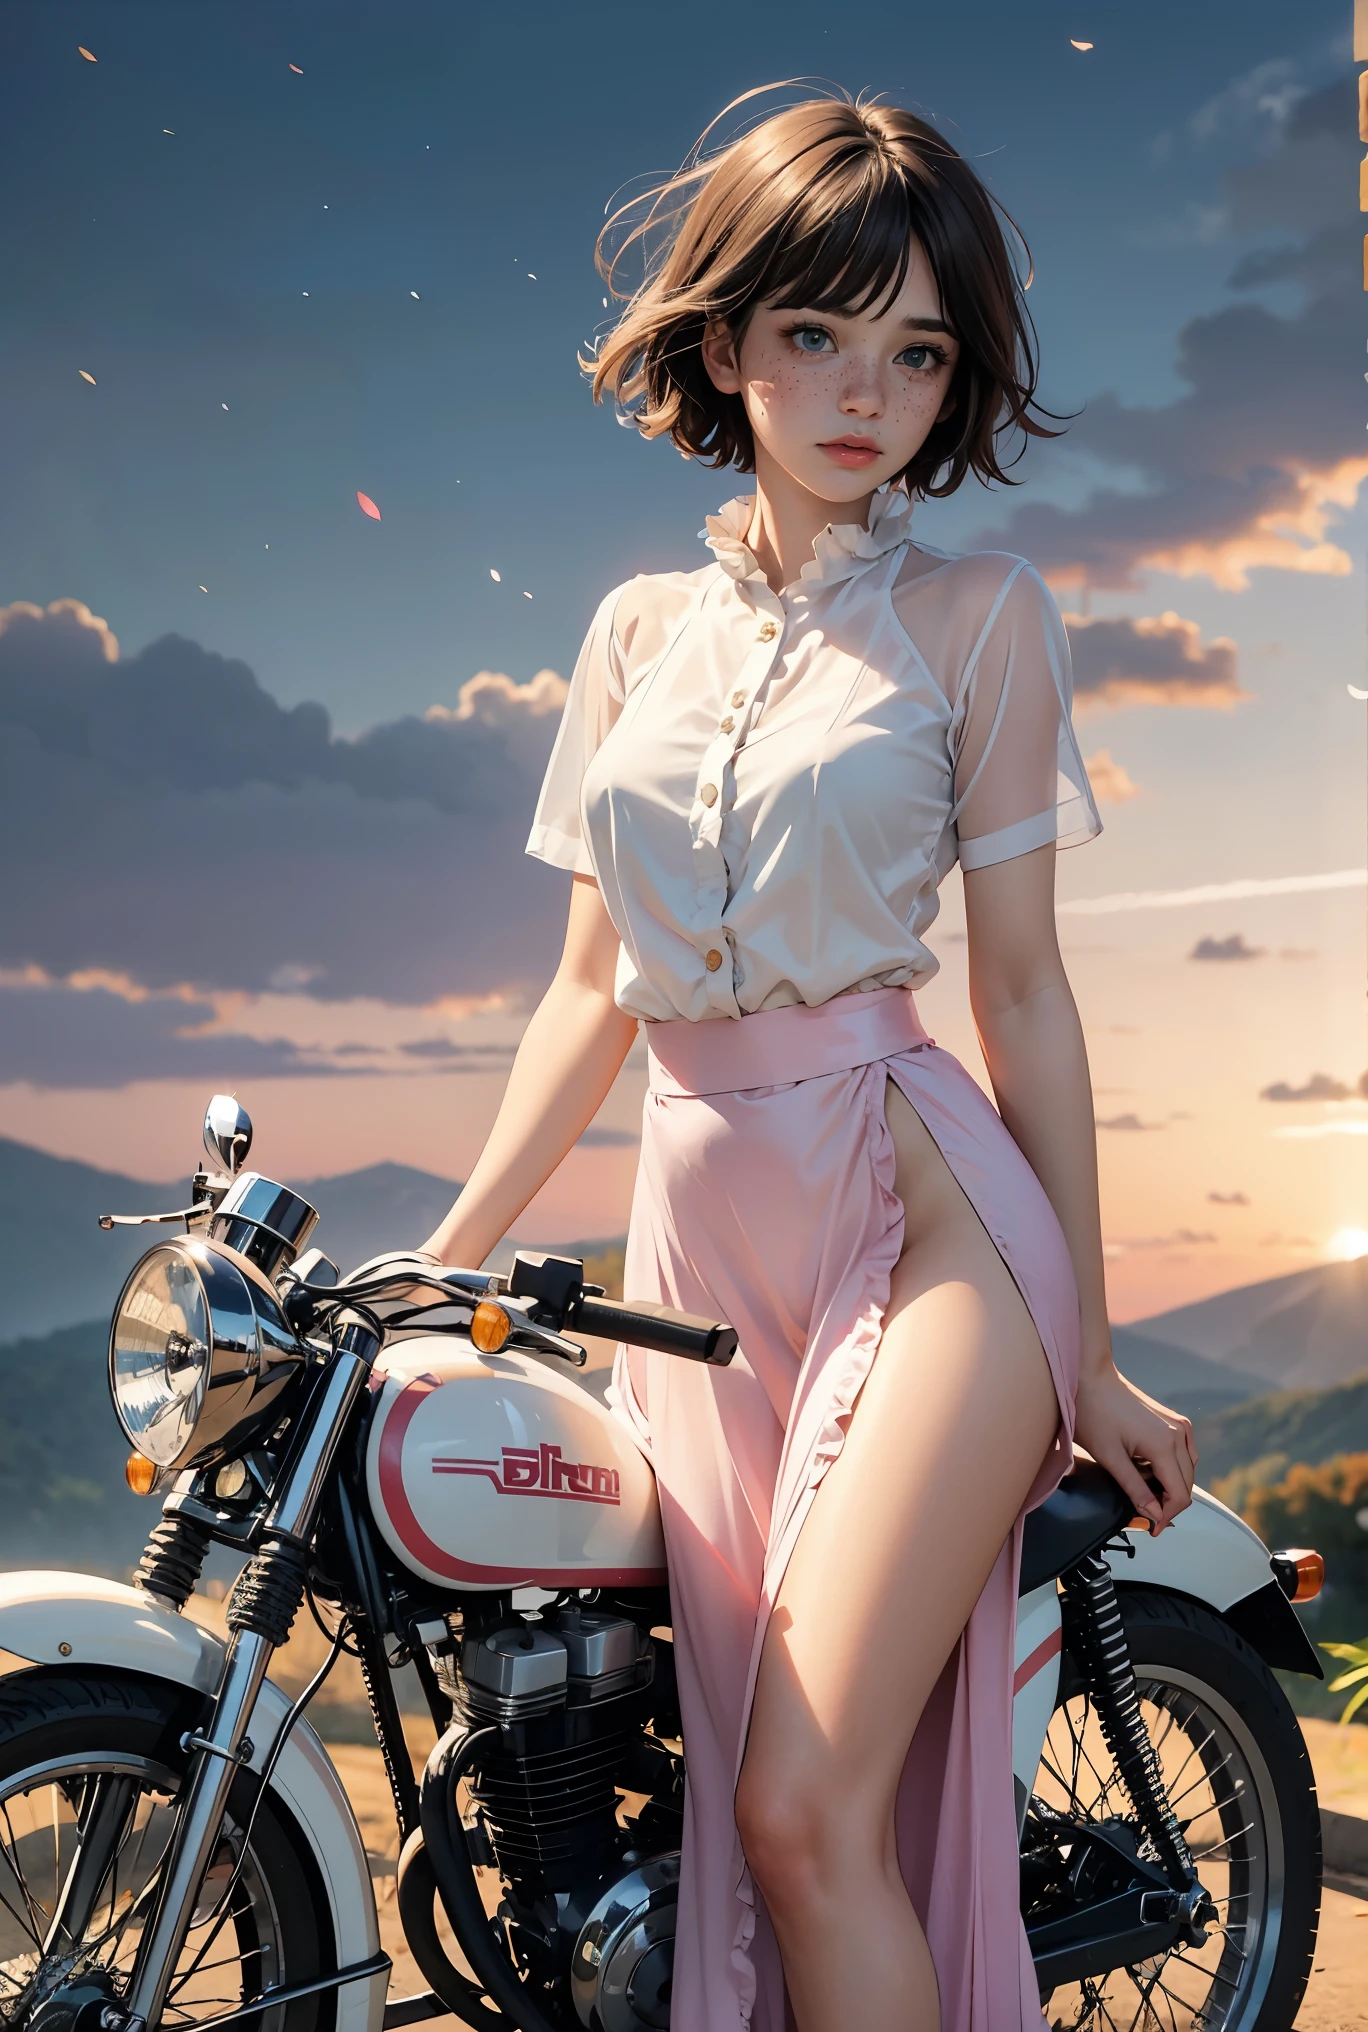 (((Realista))), (Una niña parada frente a una motocicleta antigua.:1.79), enfoque de niña, ((Ver a través de la camisa blanca con volantes:1.3), (tiro completo), (falda larga de raso rosa:1.3), desnudez, (sudoroso)), (panty intermitente:1.2), 25 años, (hermosas nubes hinchadas, cielo del atardecer), (oscuridad, Fondo del mundo de Pandora de la ladera de otoño exuberante:1.5), (, delgado, Cuerpo delgado, pezón hinchado:1.3), (fotografía, Realista, bokeh, difuminar), ((corte bob corto ondulado)), (Luces cenimáticas, luces suaves:1.3)